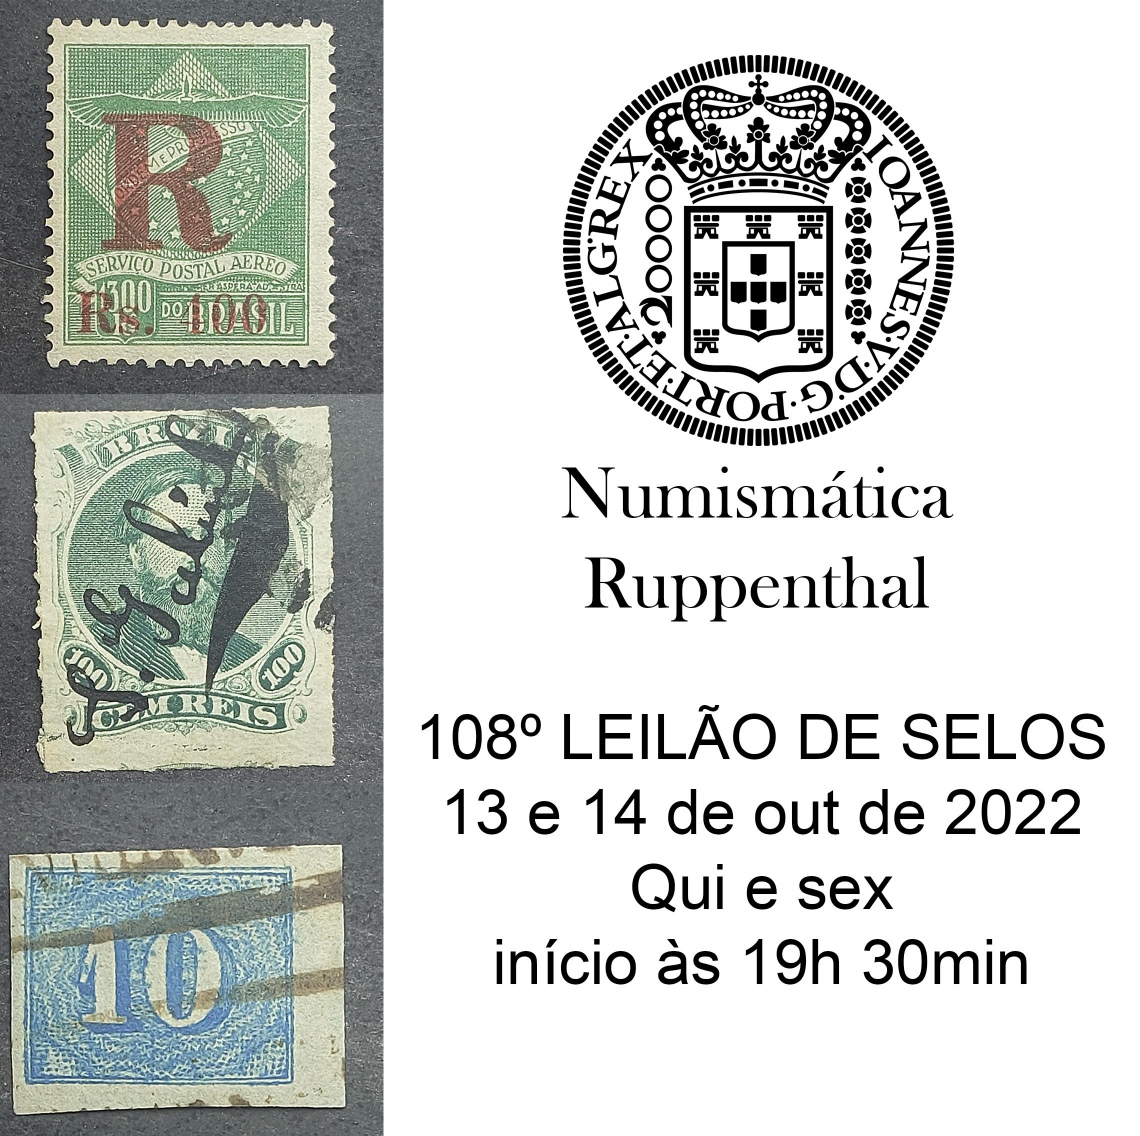 108º LEILÃO DE FILATELIA E NUMISMÁTICA - Numismática Ruppenthal